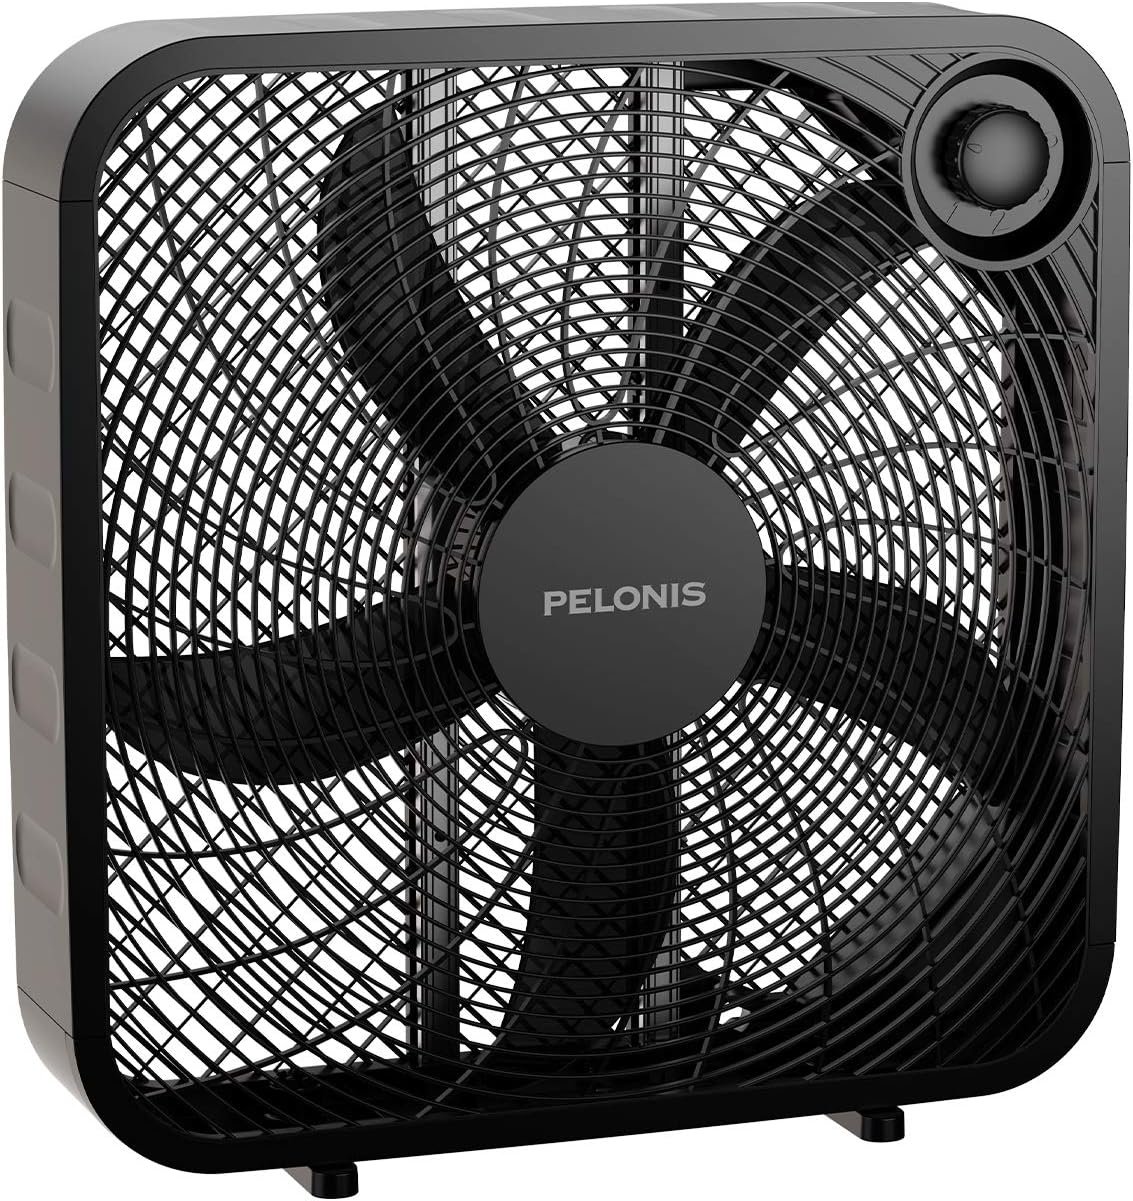 PELONIS 3-Speed Box Fan Review